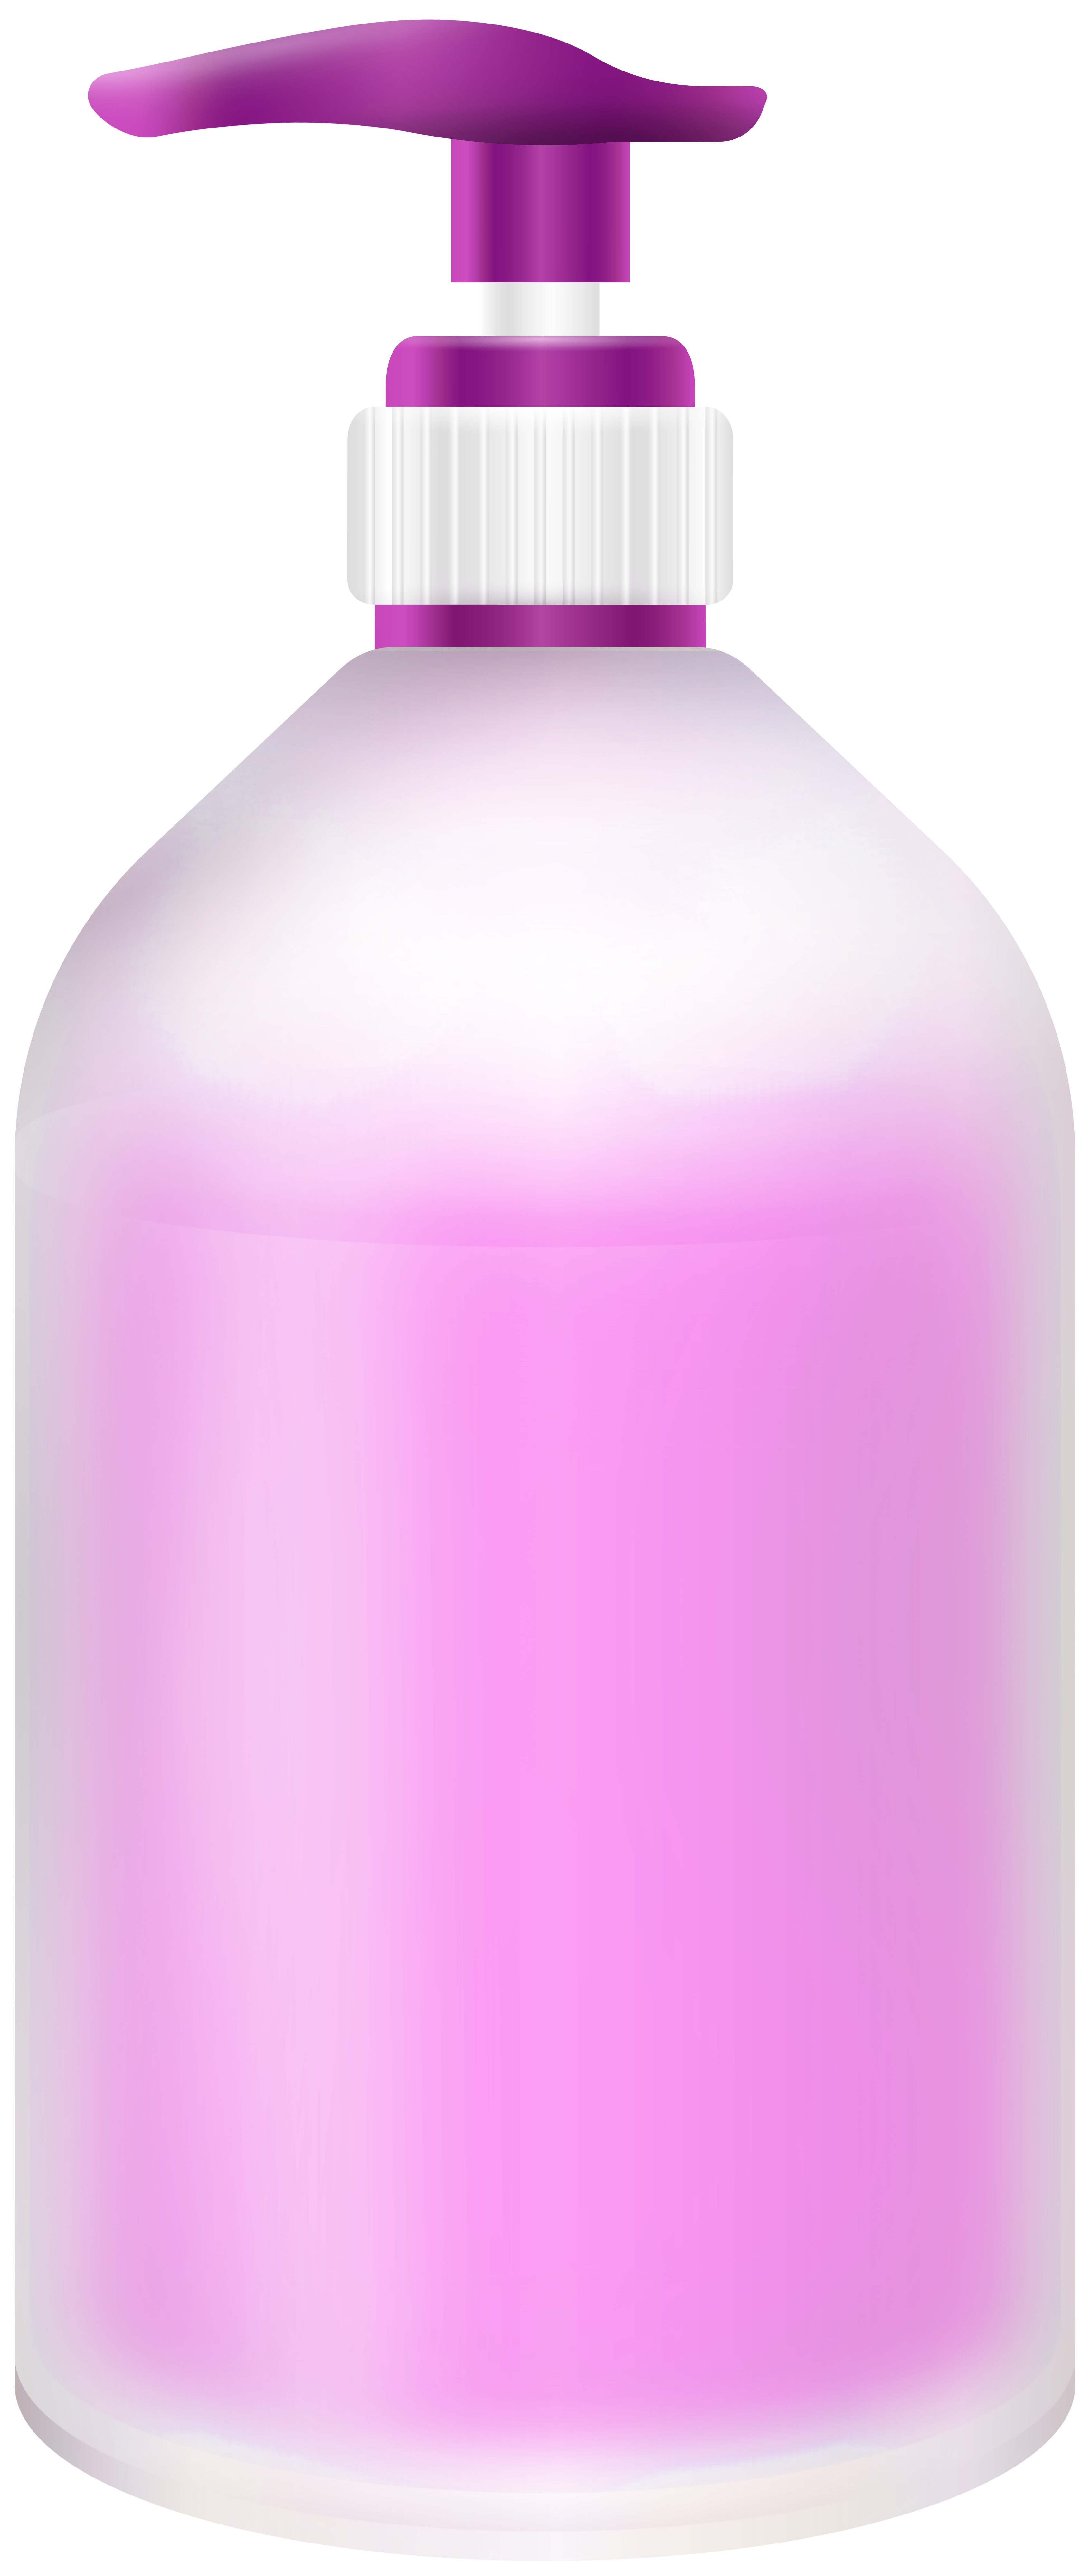 soap bottle clipart